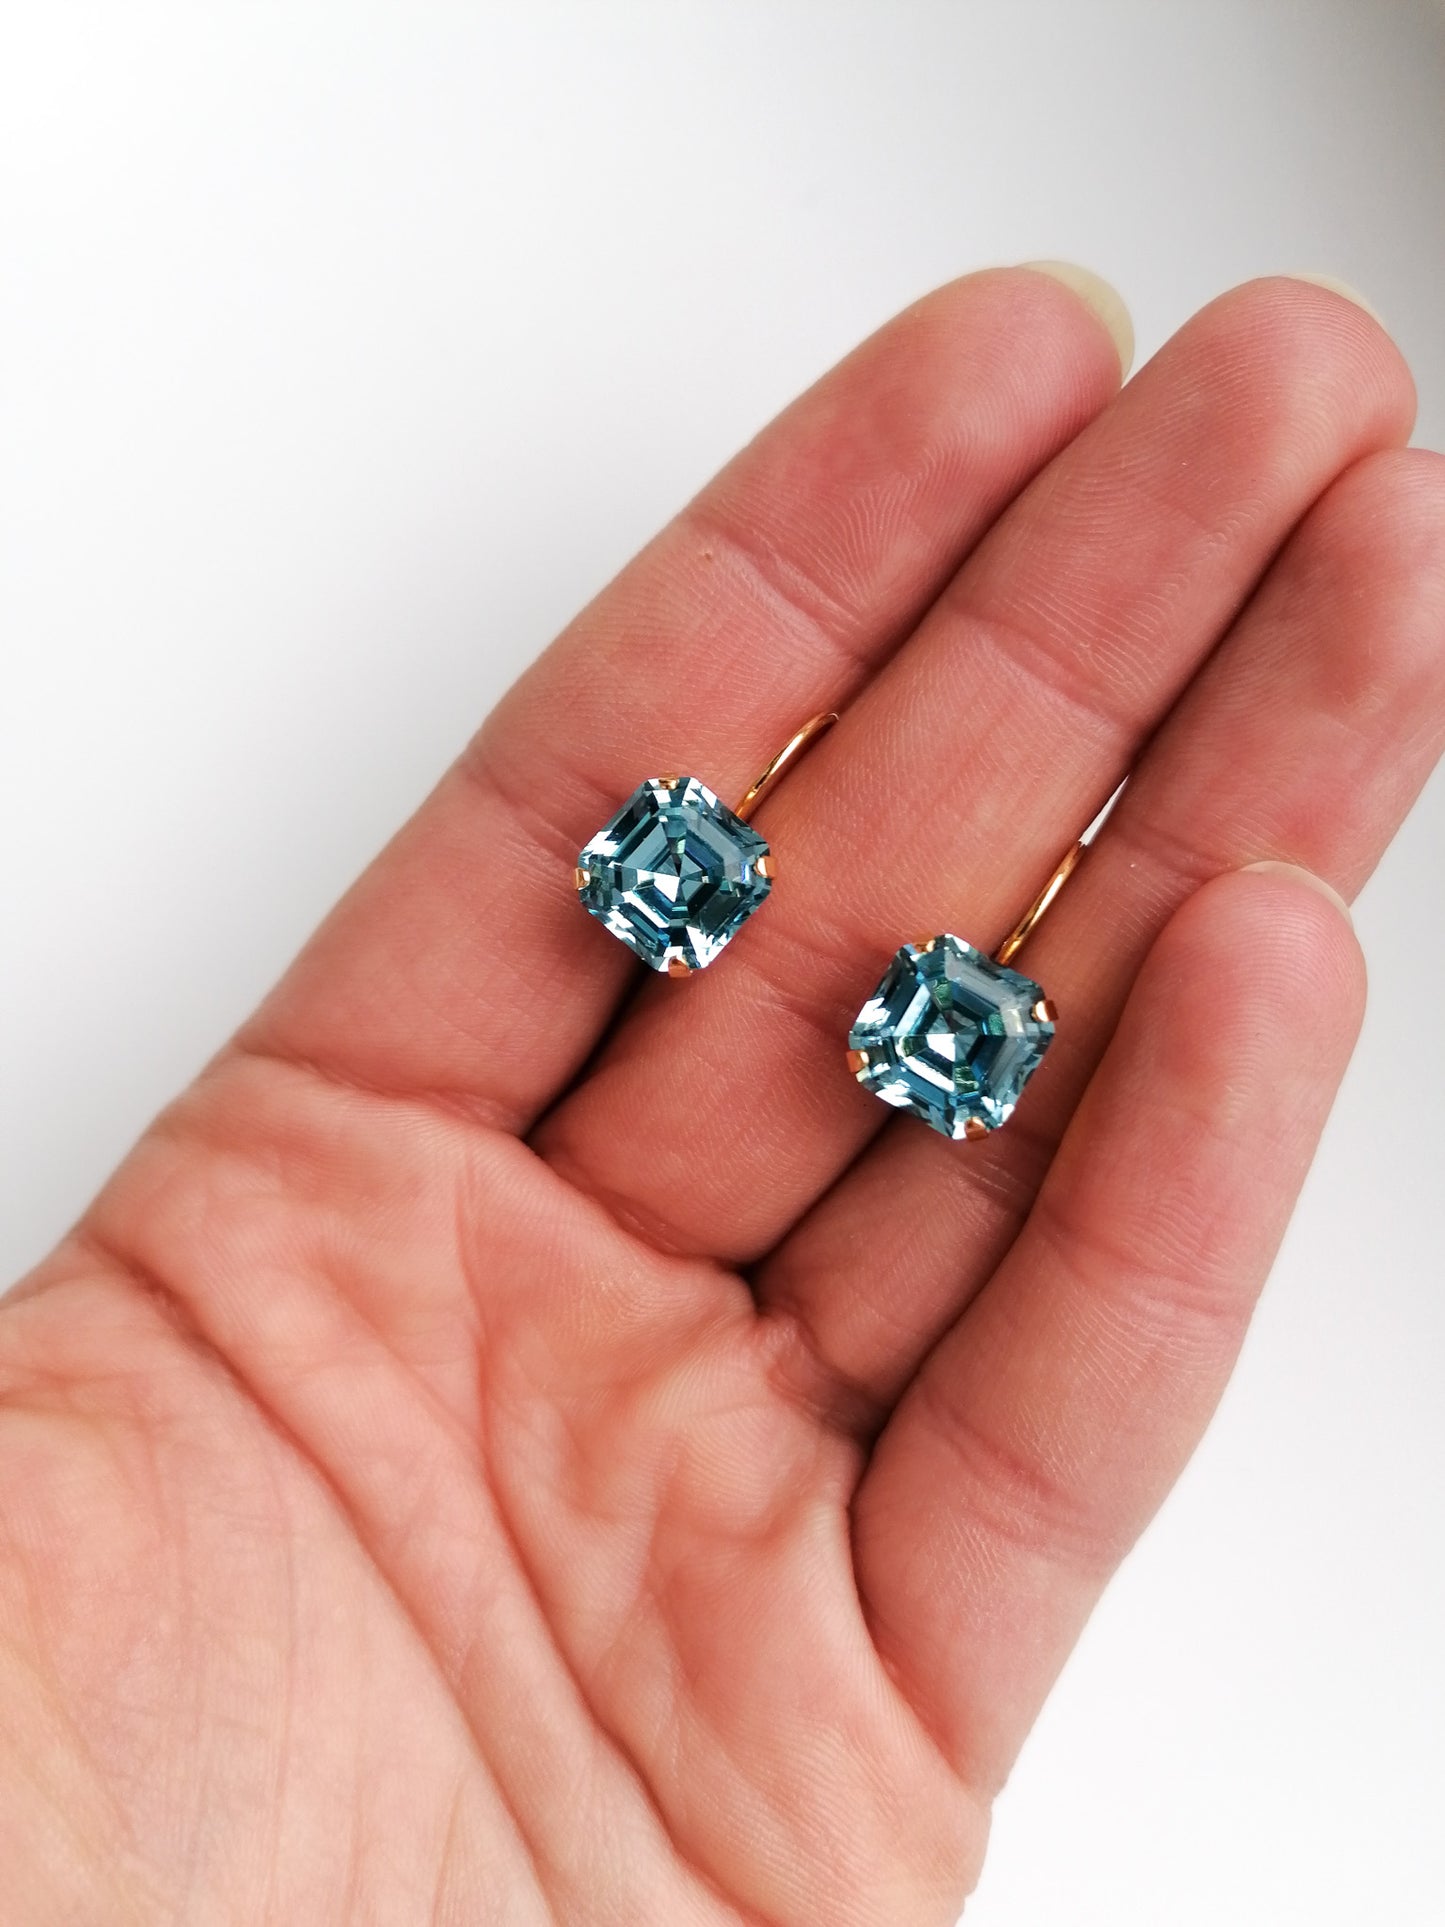 Aqua earrings